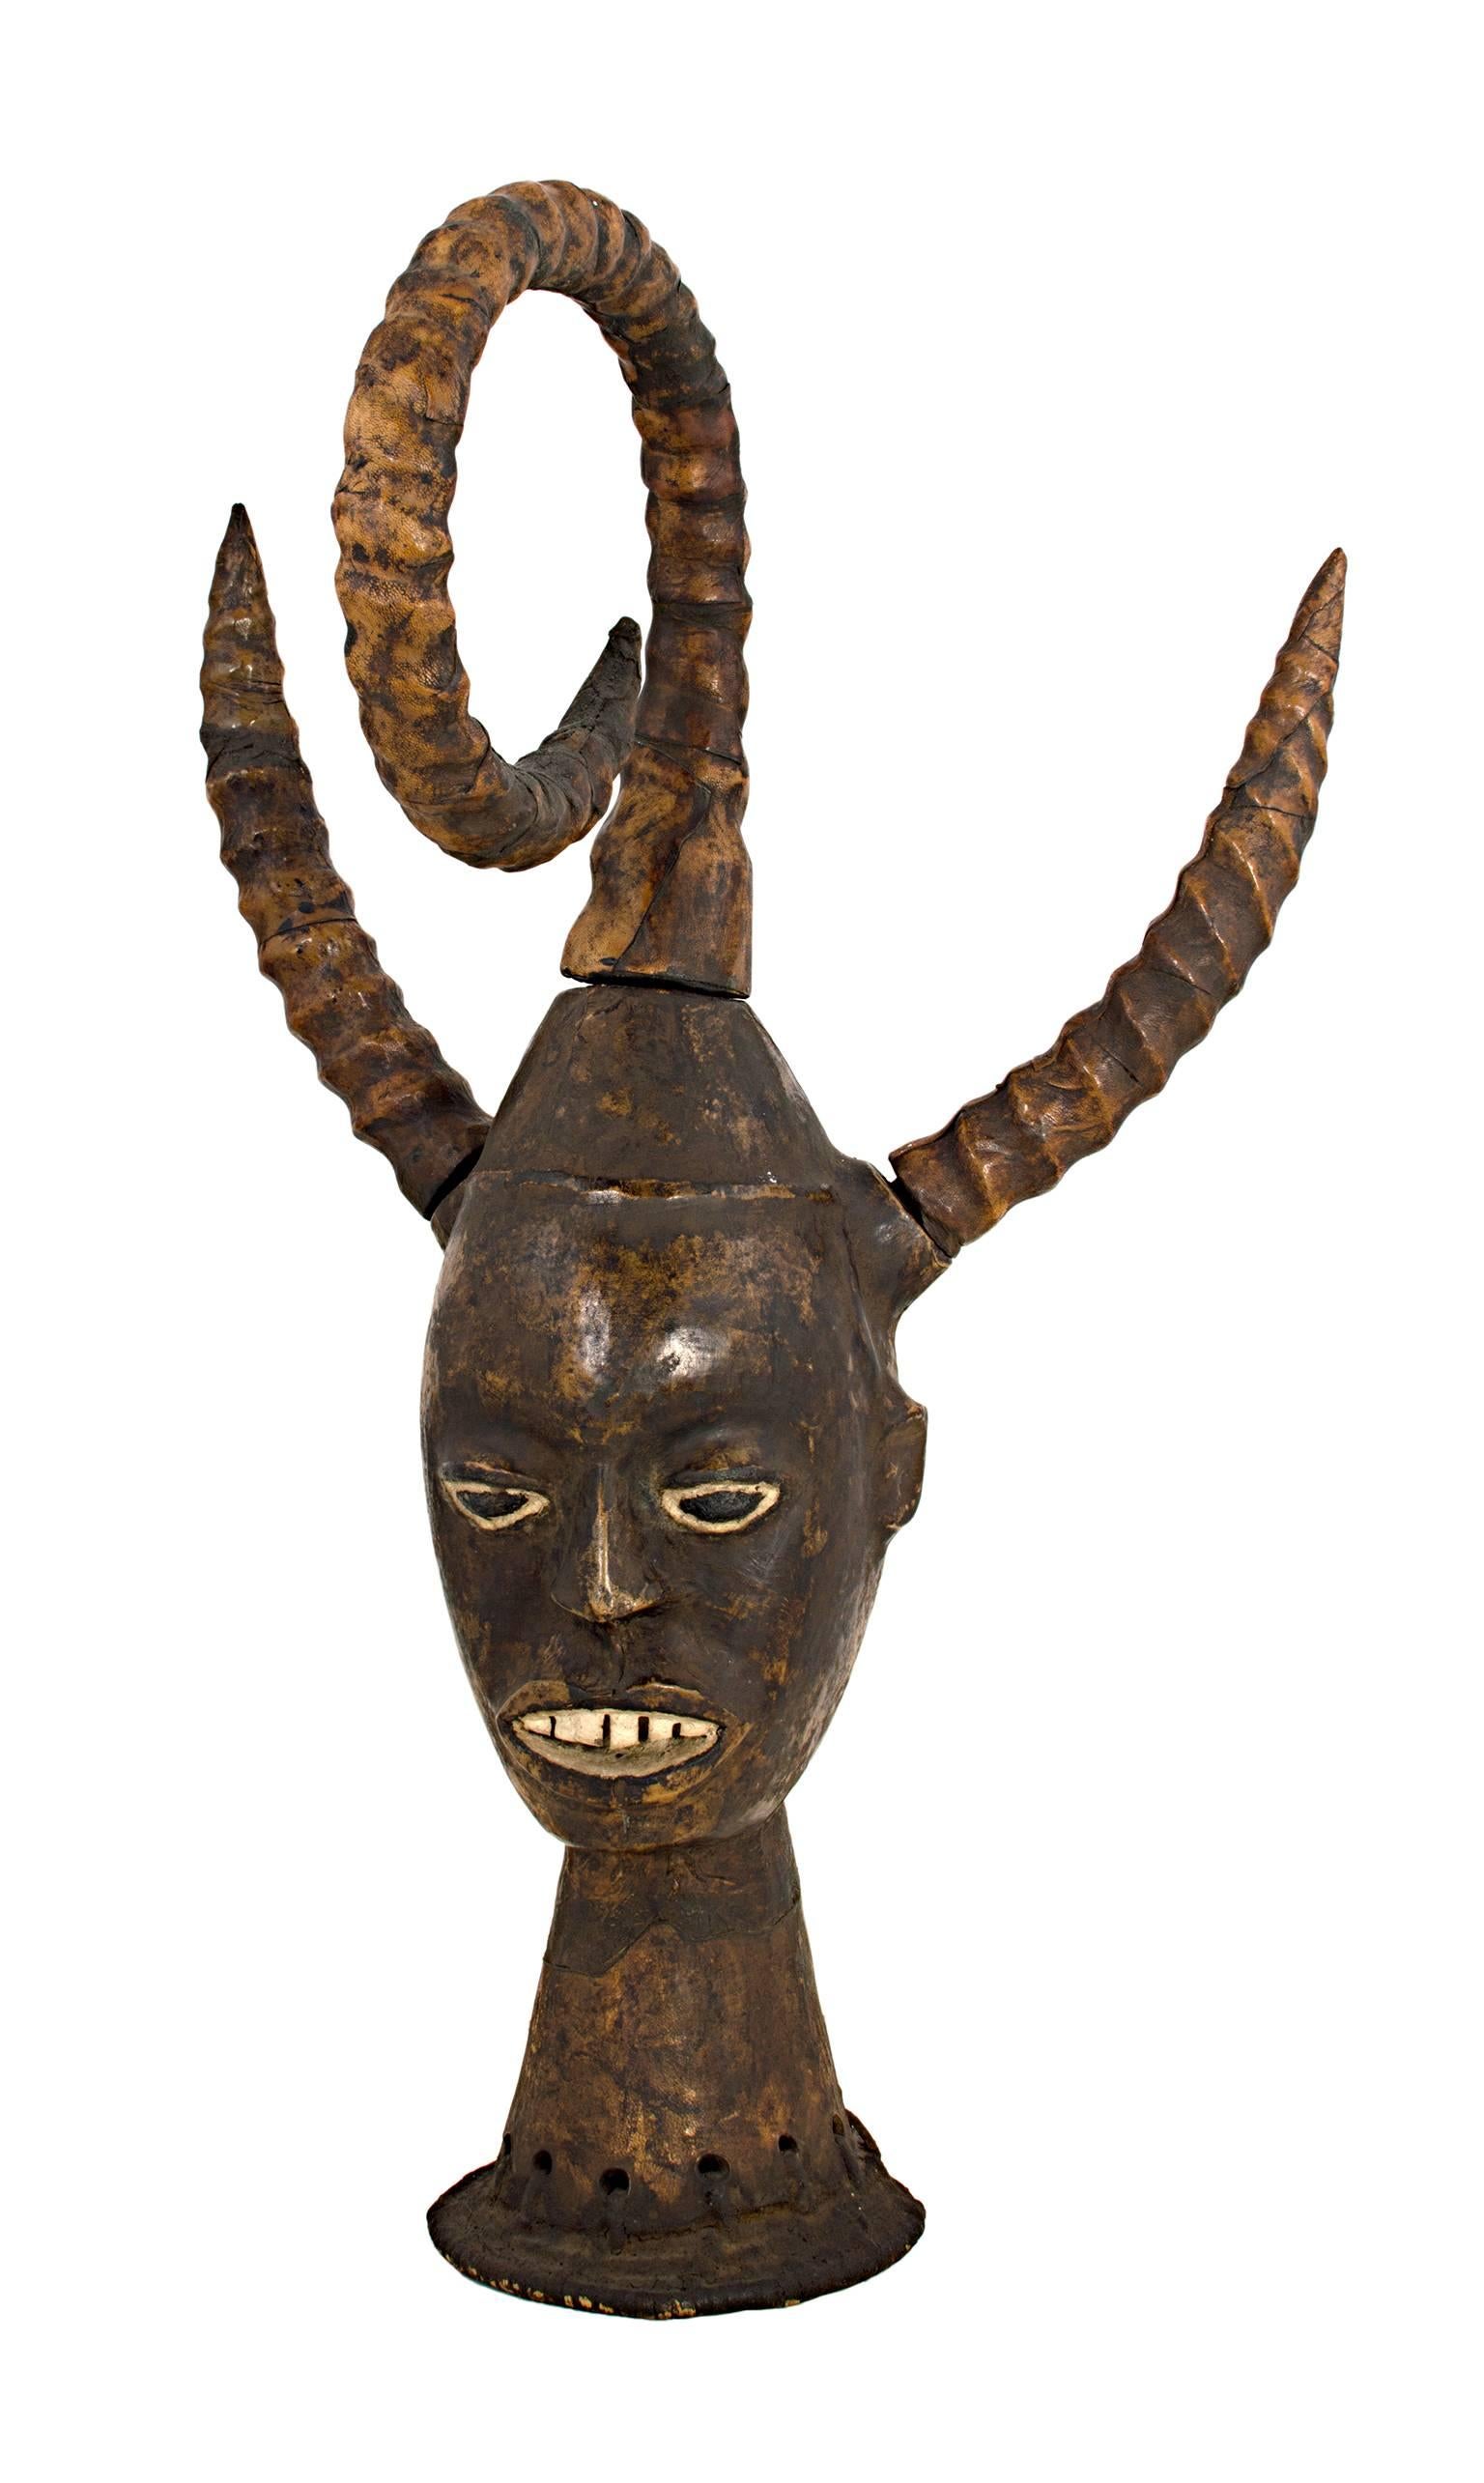 "Großer Kopf mit Hörnern - Nigerianer, Ekoi-Volk", aus Holz geschnitzt, um 1950